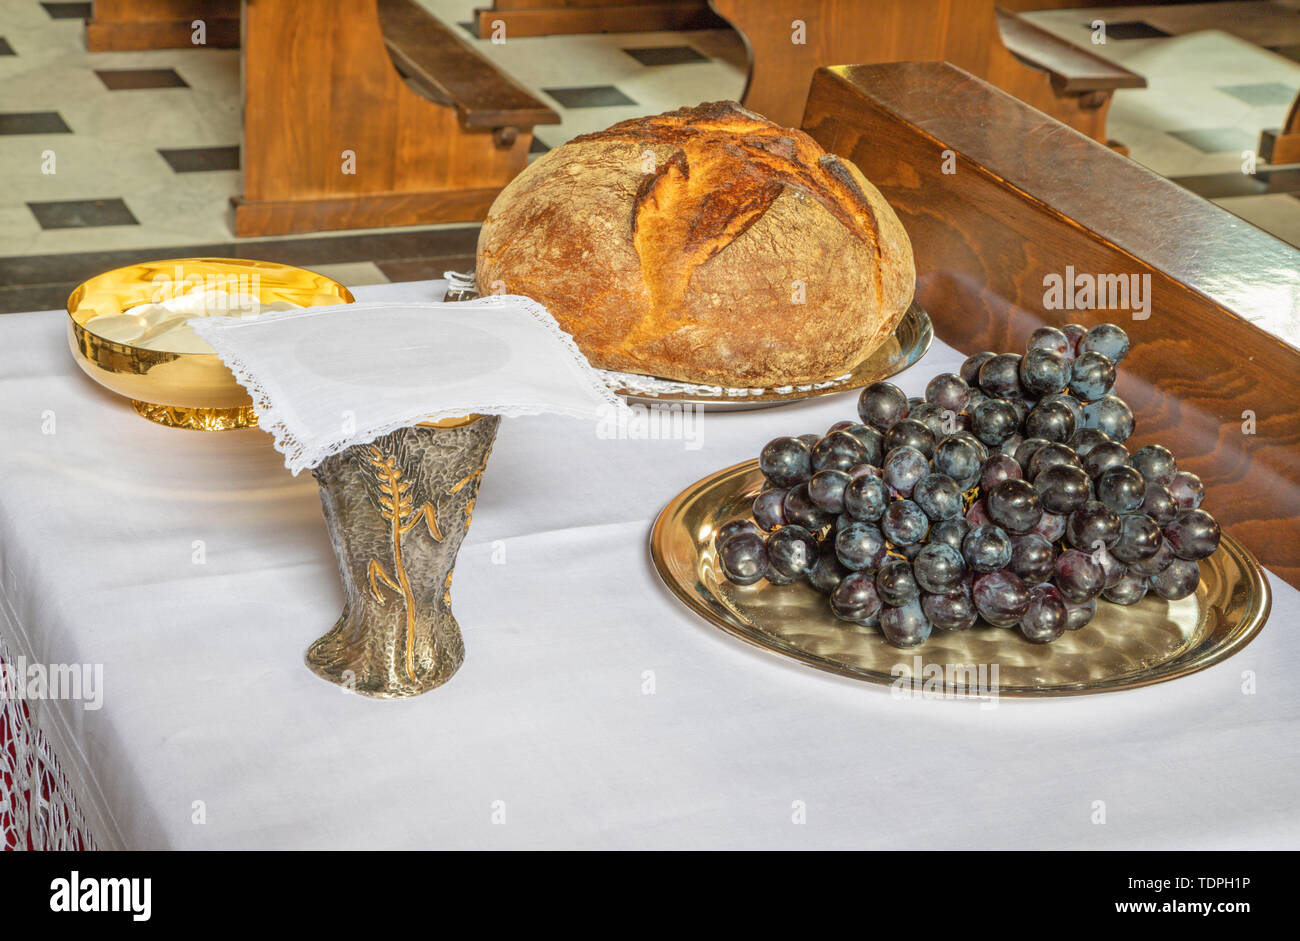 Le pain et le vin - Messe catholique - les symboles de l'eucharistie. Banque D'Images